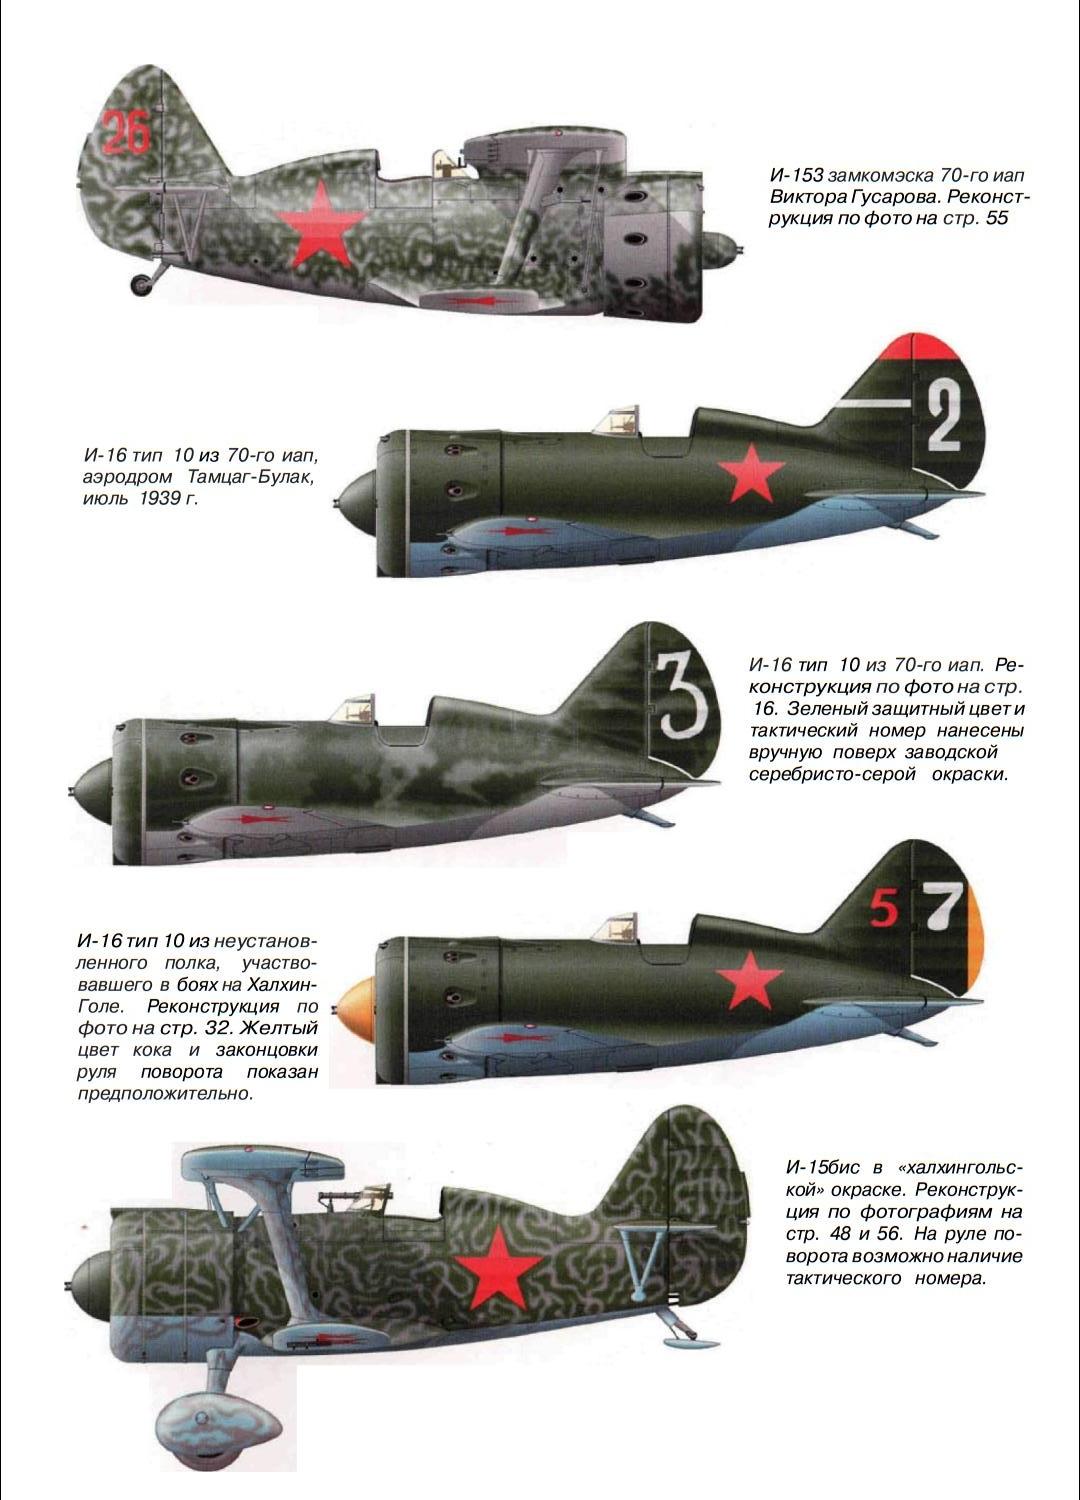 苏联援华志愿航空队的机身涂装是什么样子的？跟苏军使用的飞机涂装一样么？ - 知乎